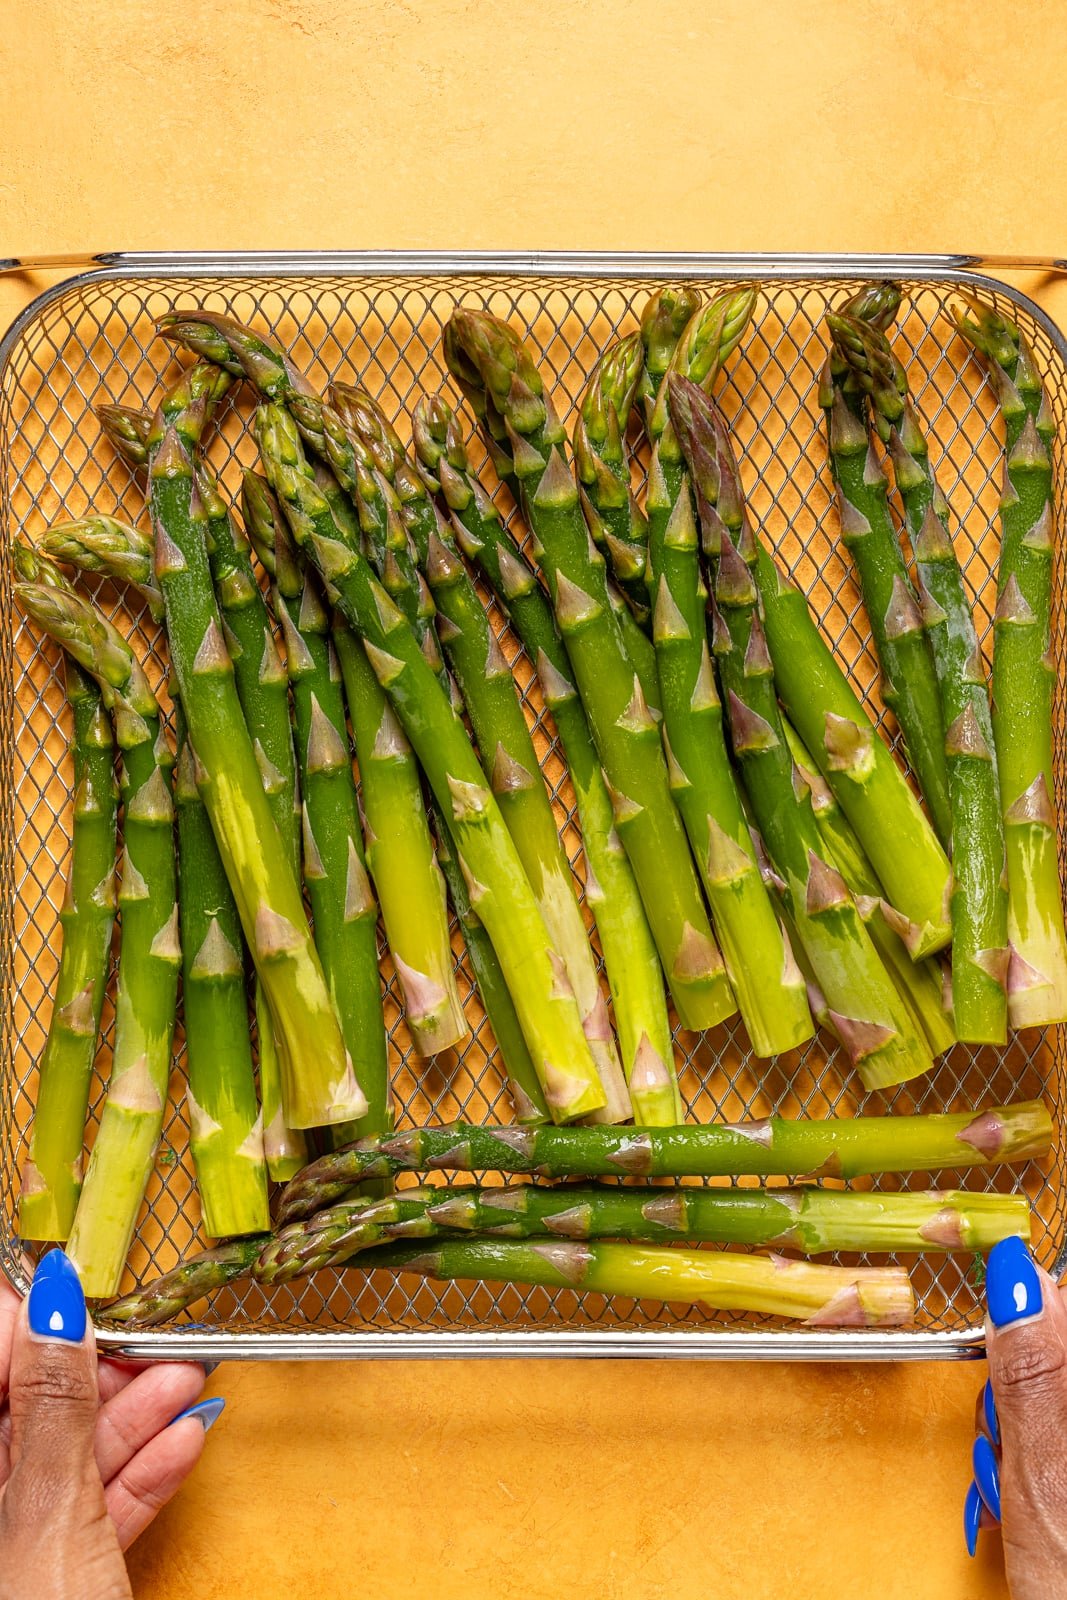 Asparagus in an Air Fryer basket being held.